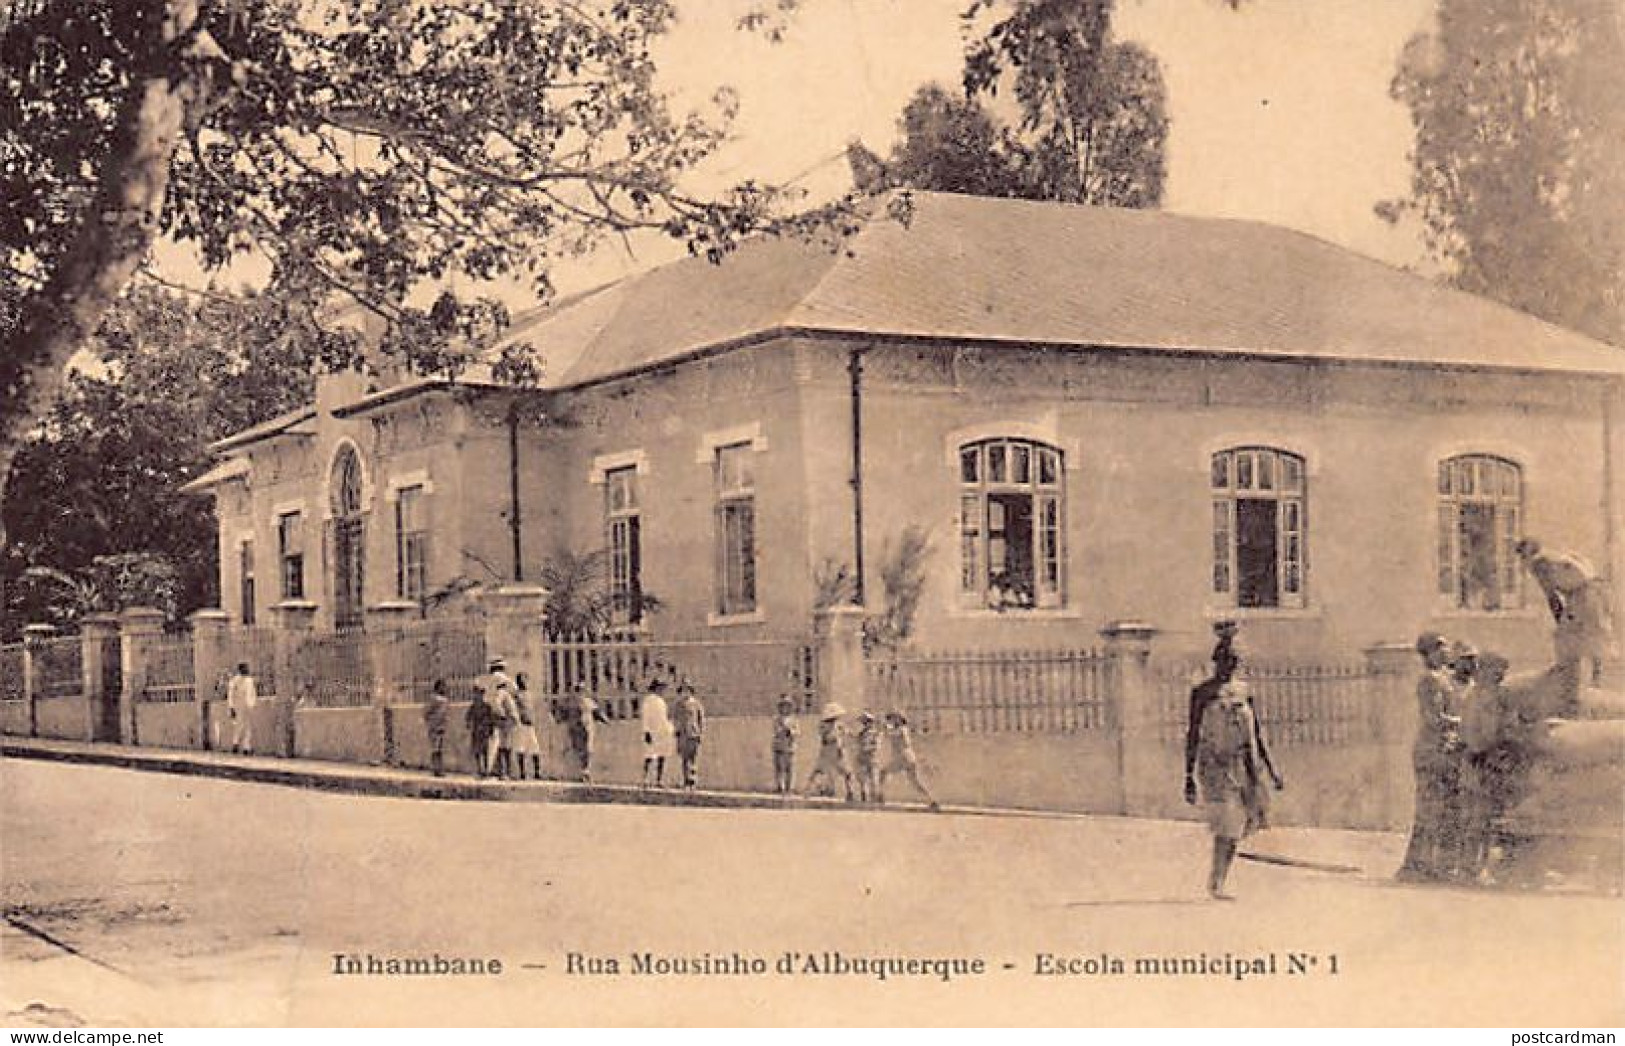 Mozambique - INHAMBANE - Rua Mousinho D'Albuquerque - Escola Municipal N° 1 - J. Pestonjee Photographer - Publ. J. Phili - Mozambico